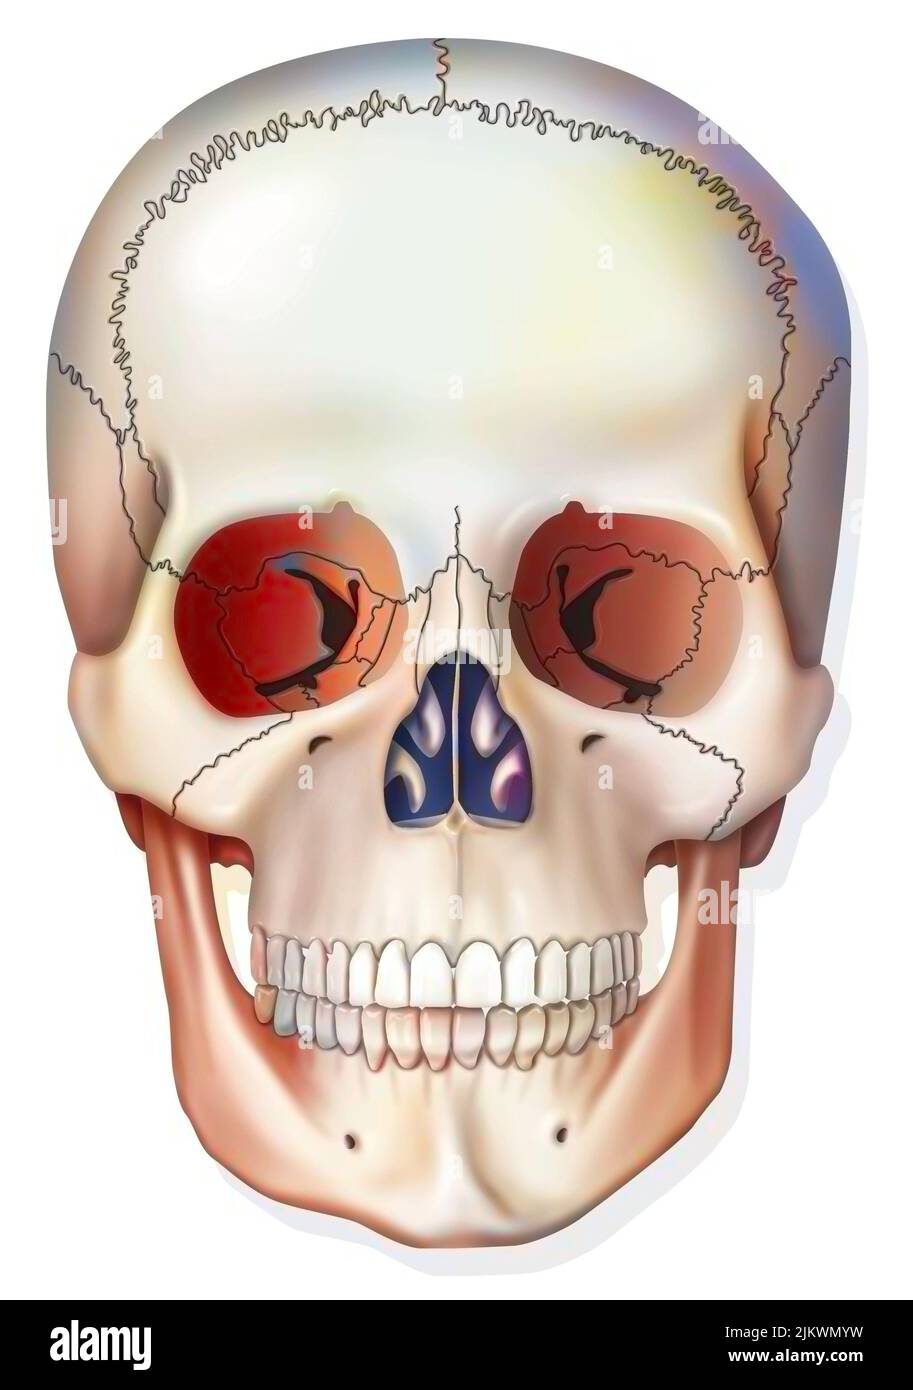 Système osseux : crâne humain avec mâchoire, prises oculaires. Banque D'Images